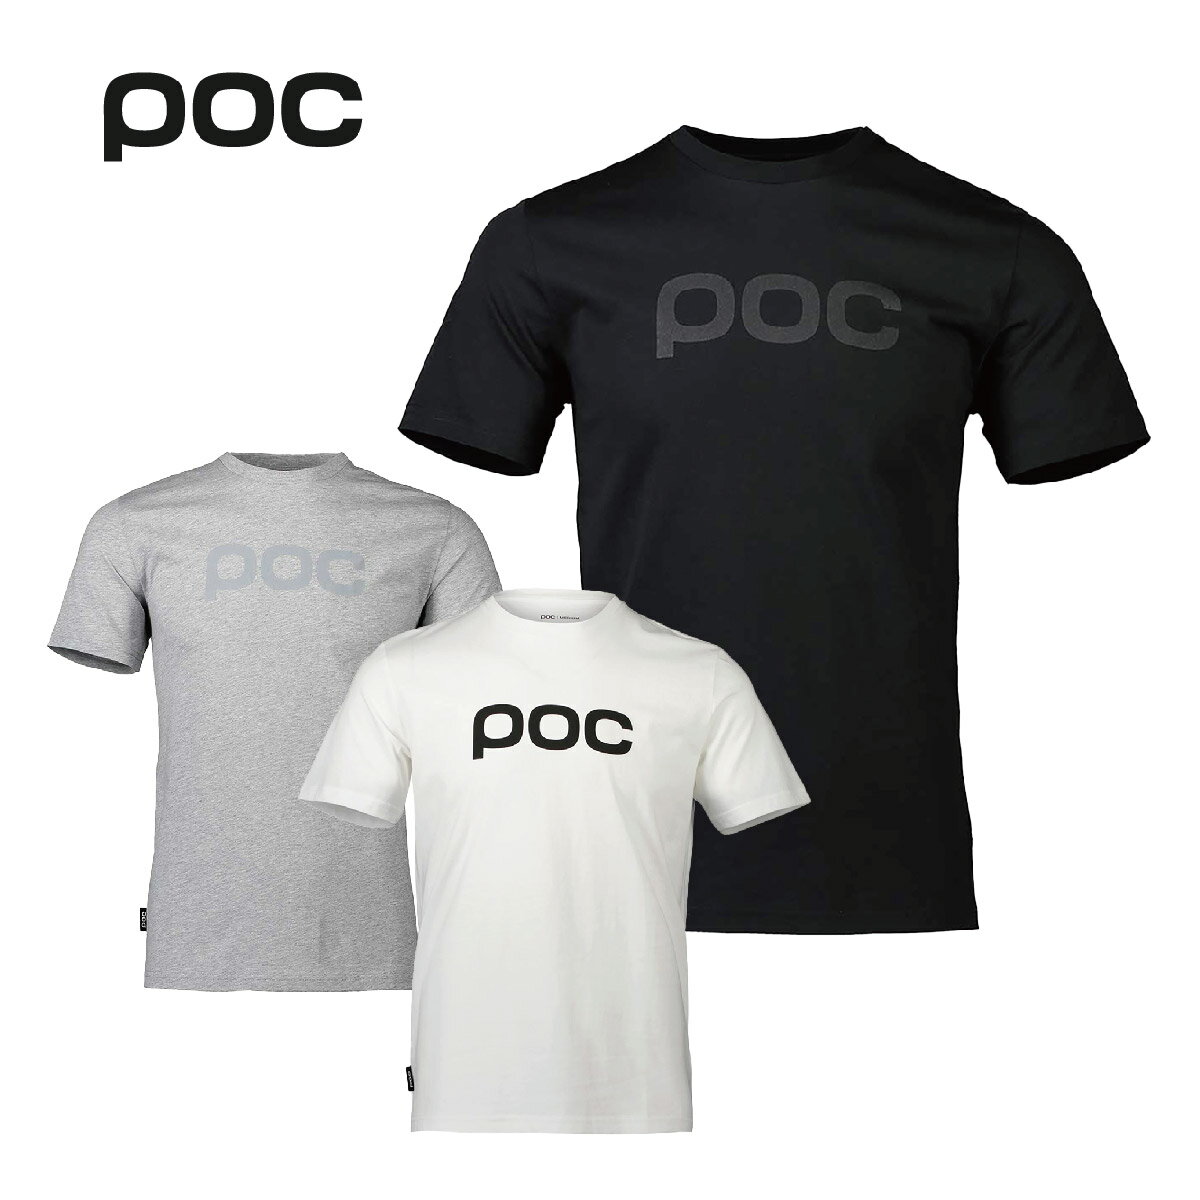 メーカー希望小売価格はメーカーカタログに基づいて掲載していますPOC ポック Tシャツ■POC TEEカラー・Uranium Black・Grey Melangeシームの下部に冠したPOCのロゴのタグラベルなど、POCのクラシックなディテールを備えたこのTシャツは、従来のモデルを強く反映しながらも、さらに優れた品質と快適さを実現。非常に柔らかな感触と高い耐久性から世界的に認められている、米国産のSupimaCottonのみから作られたTシャツは、洗濯を繰り返しても、その品質を維持します。実寸サイズ・Mサイズ：身幅50cm　着丈71cm・Lサイズ：身幅53cm　着丈74cm※実店舗にて平置きで計測しておりますので多少の誤差はご了承くださいませSIZES：XS、S、M、LCOLOR:1002 / URANIUM BLACK/1044 / GREY MELANGEラス1セール